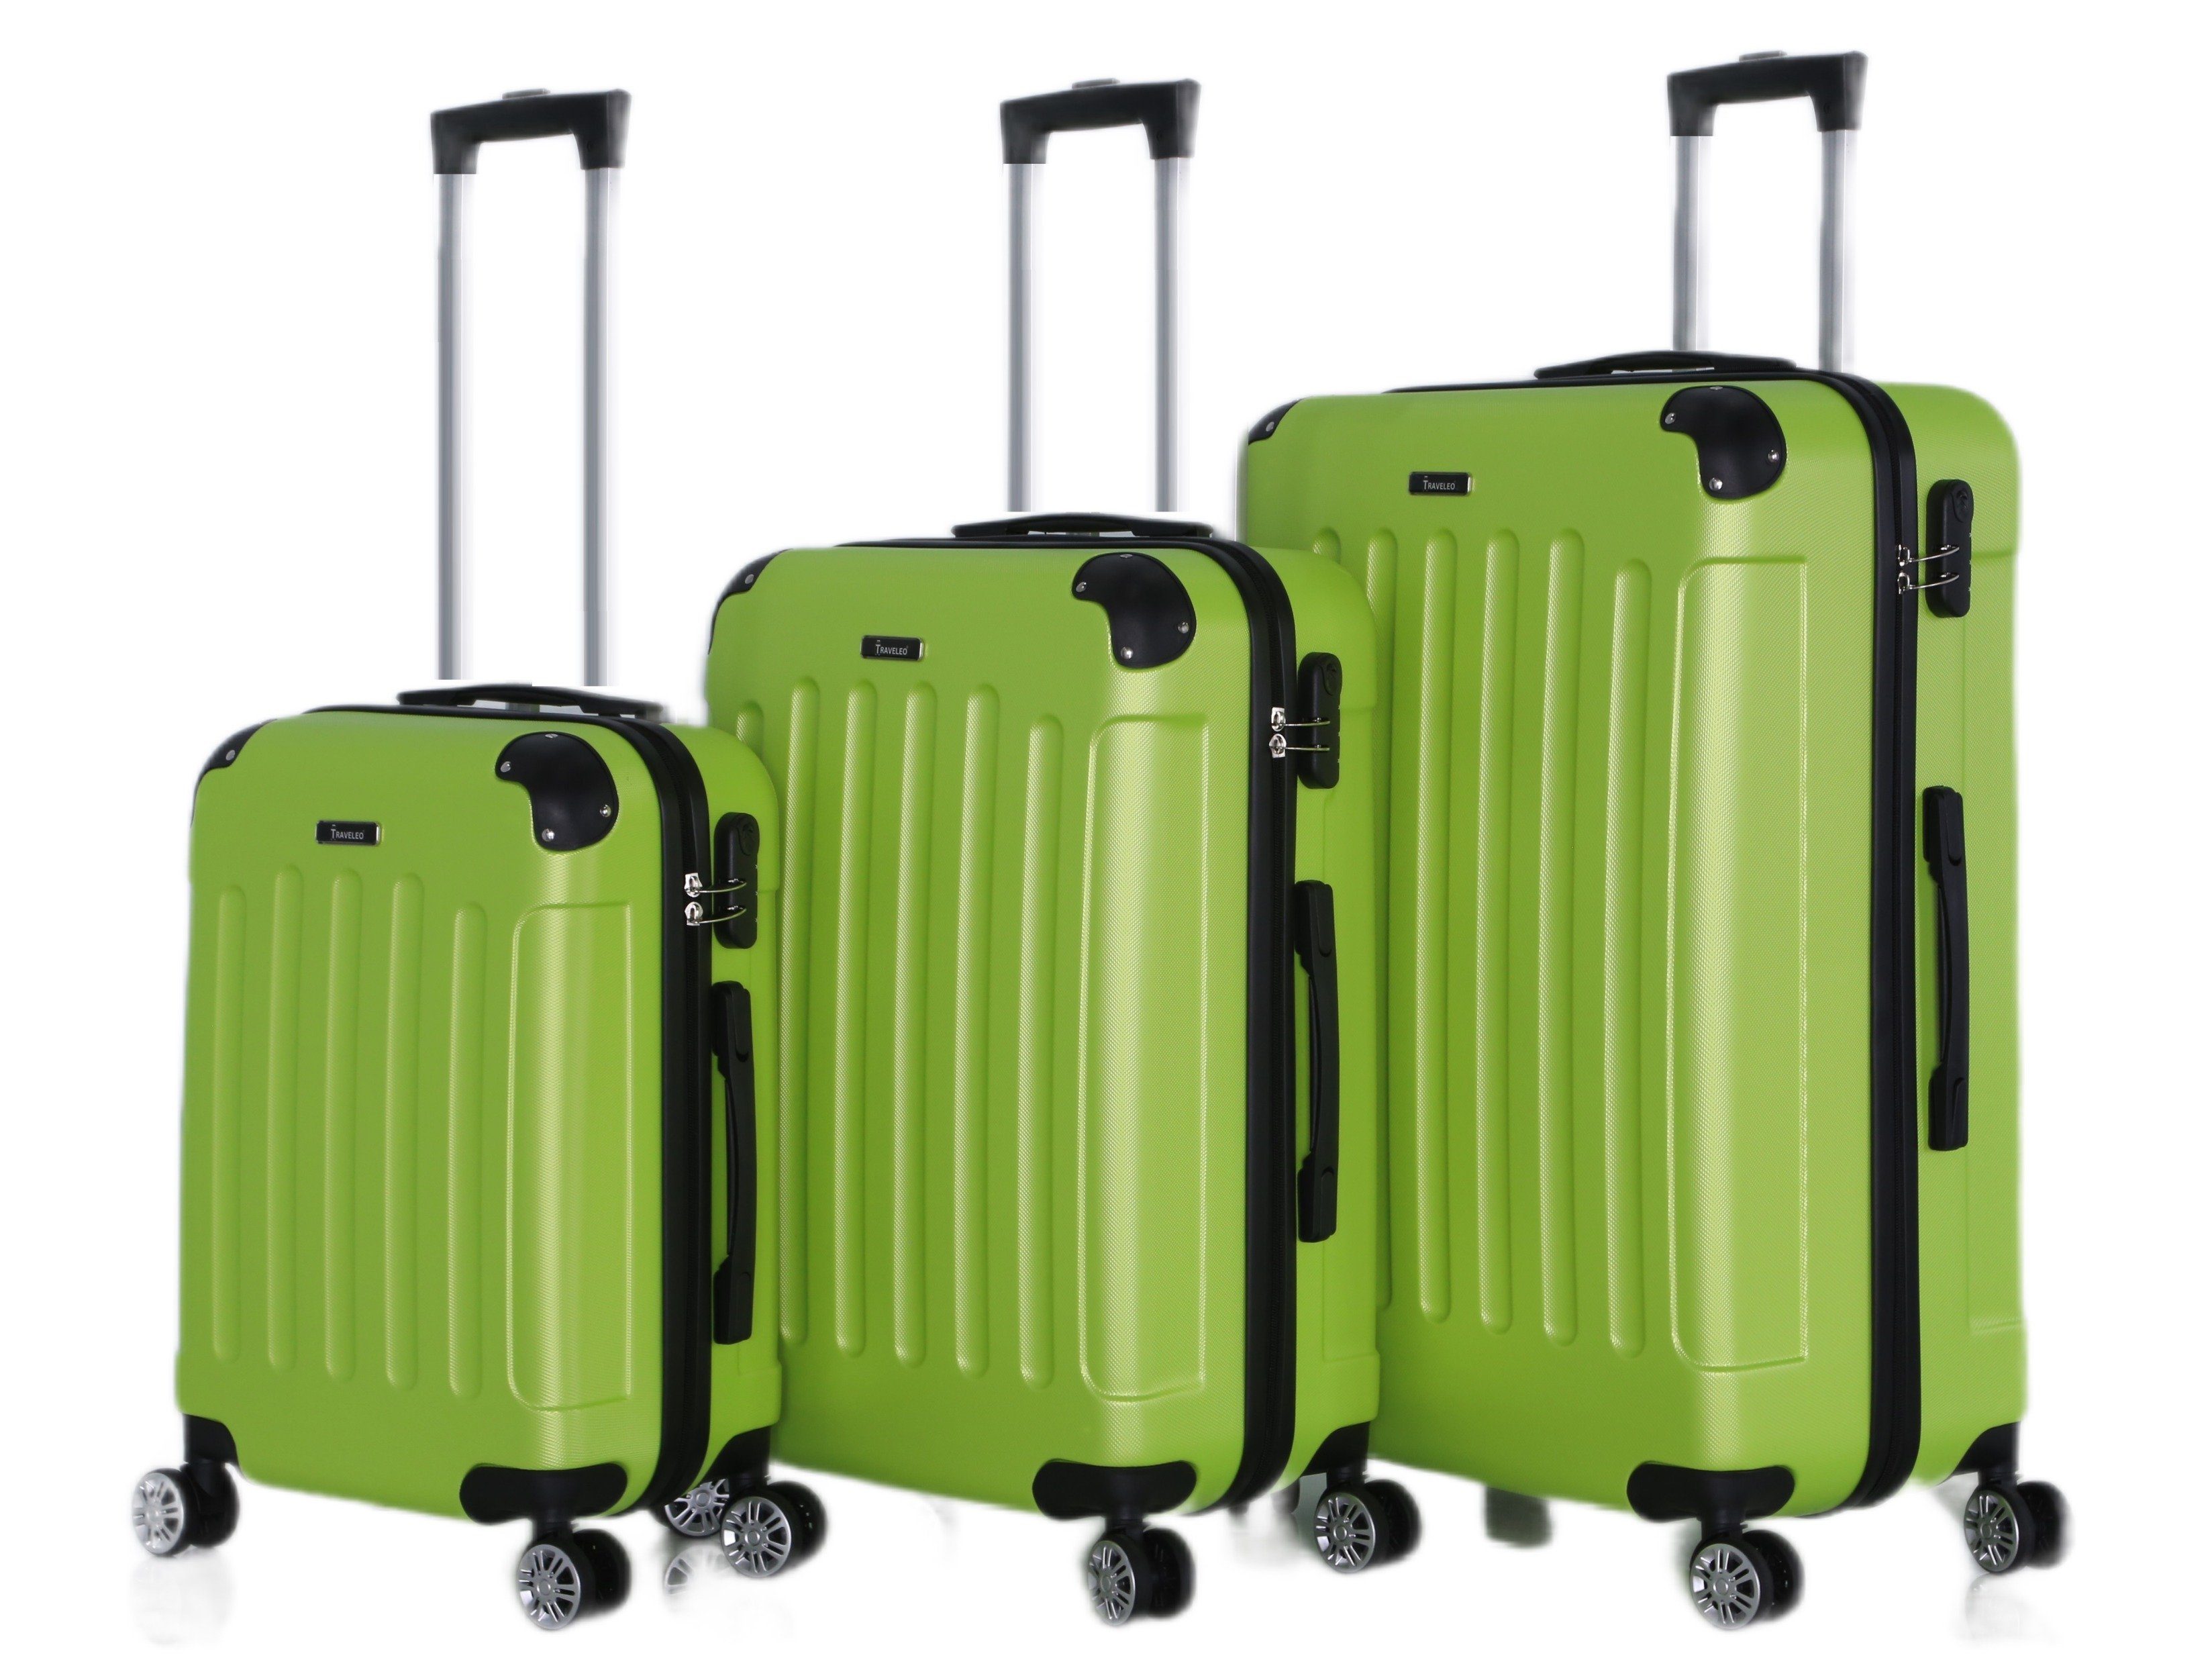 Rungassi Kofferset Hartschalenkoffer Trolley Reisekoffer Koffer Set Rungassi grün ABS01